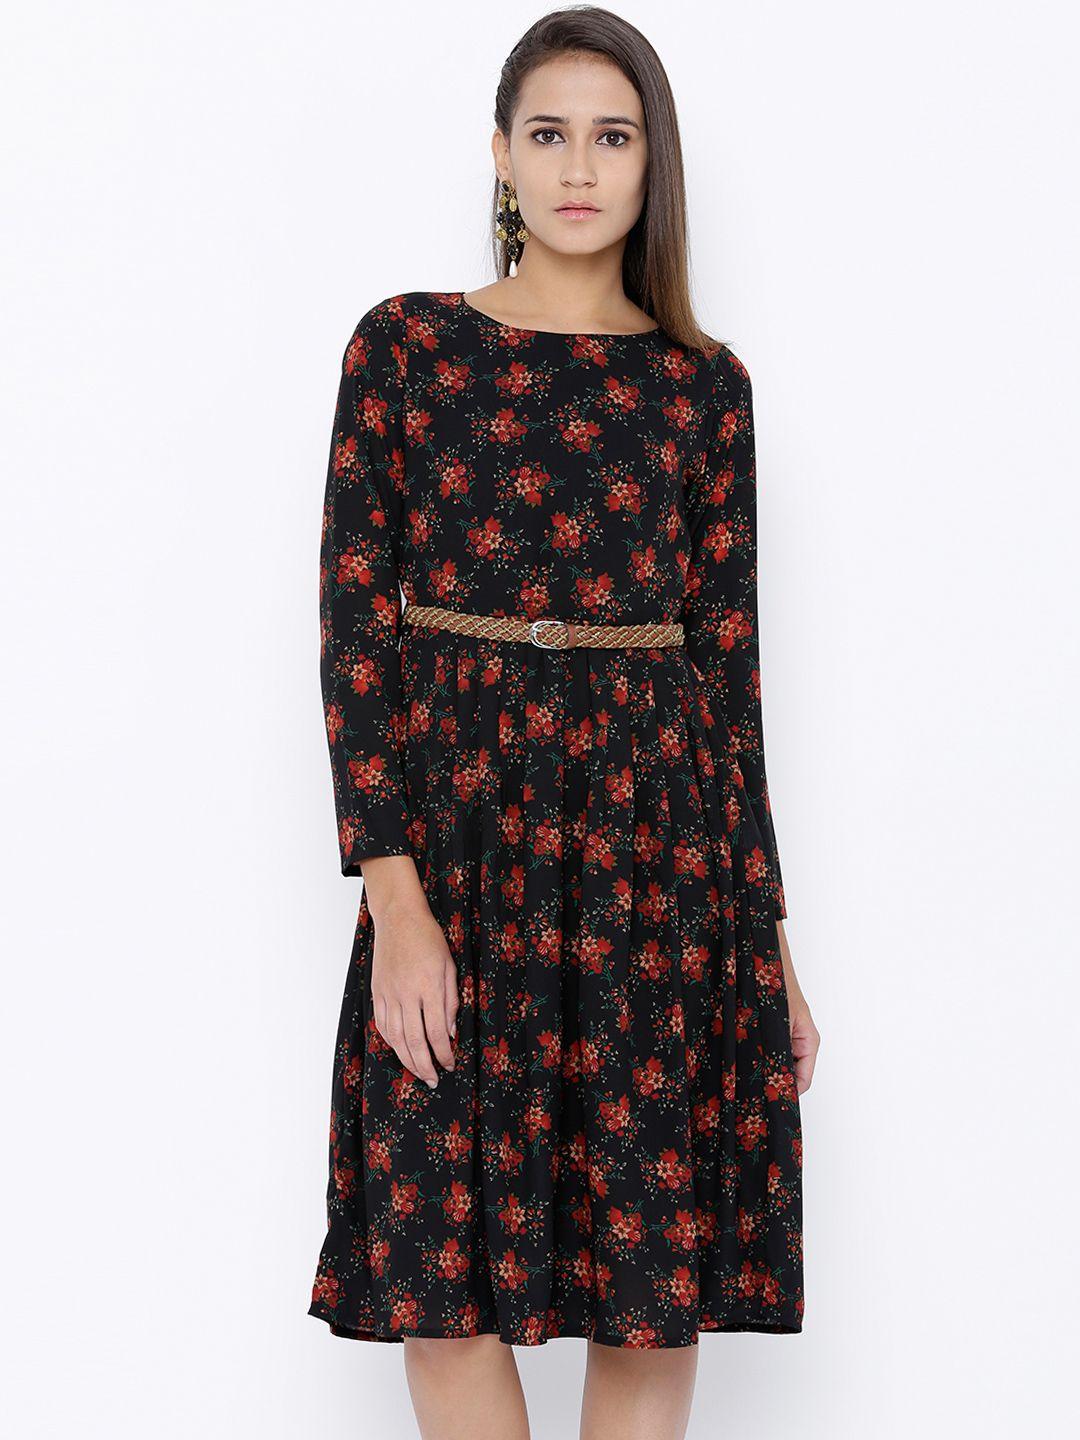 tokyo talkies women black floral print fit & flare dress